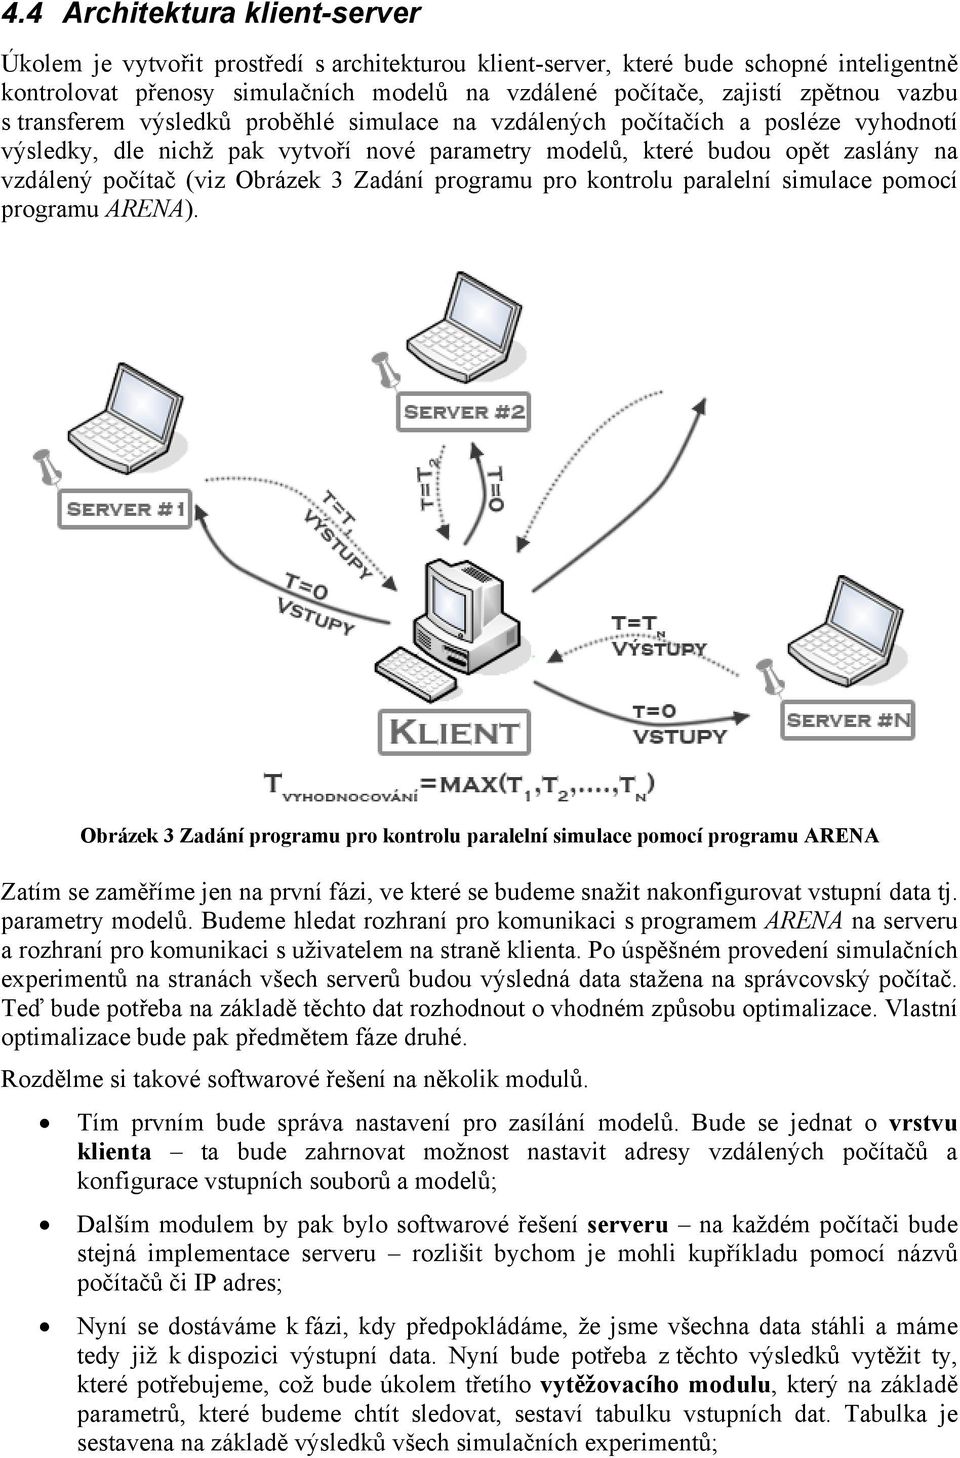 Obrázek 3 Zadání programu pro kontrolu paralelní simulace pomocí programu ARENA).